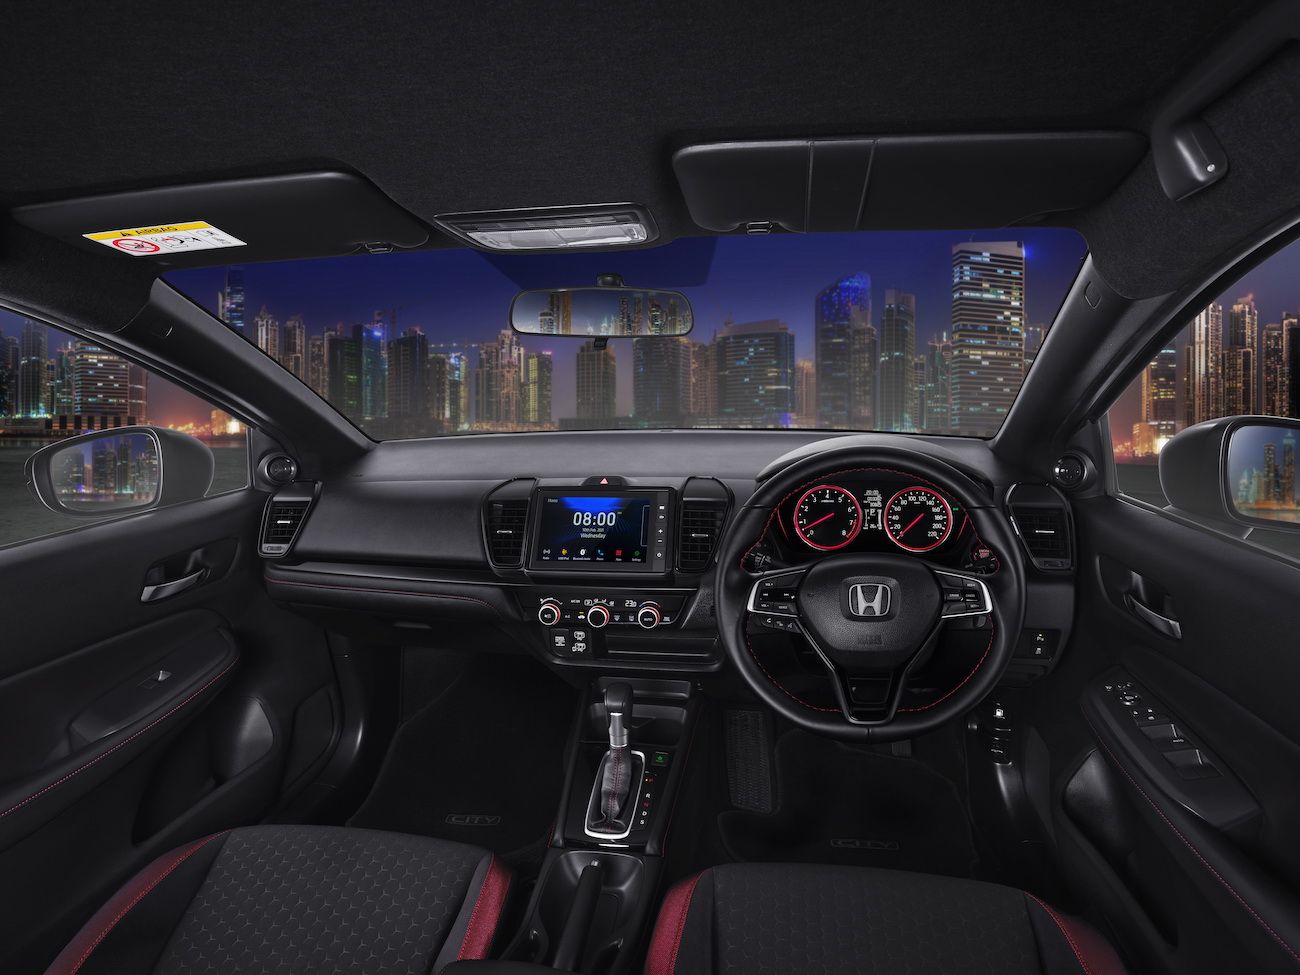  Interior Honda City Hatchback RS dirancang untuk menambah kesan sporty dan kenyamanan yang lebih tinggi.